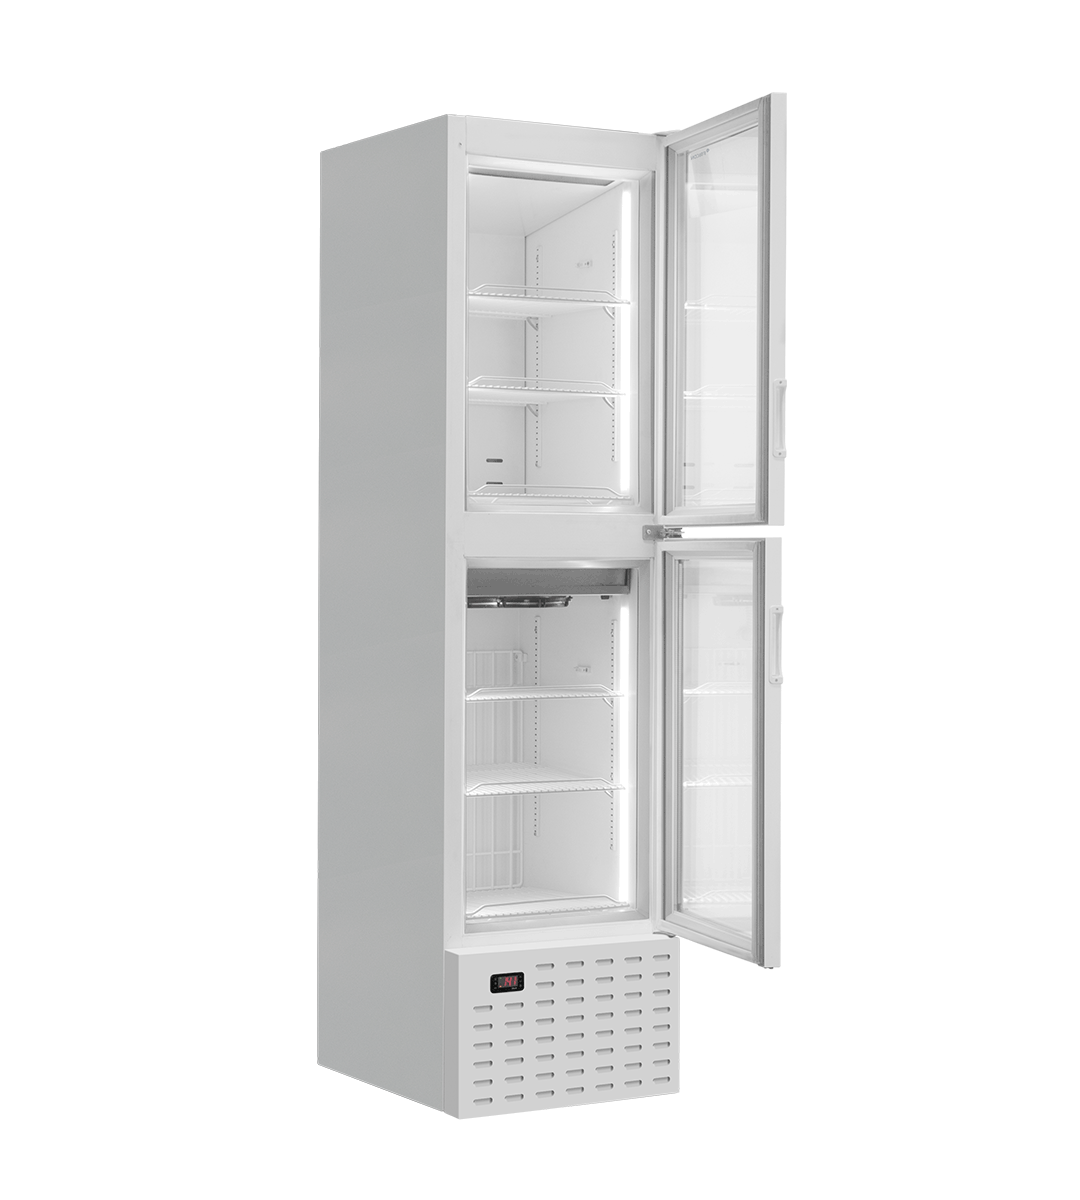 fricon-refrigerador-vertical-duo-v-dtt-202